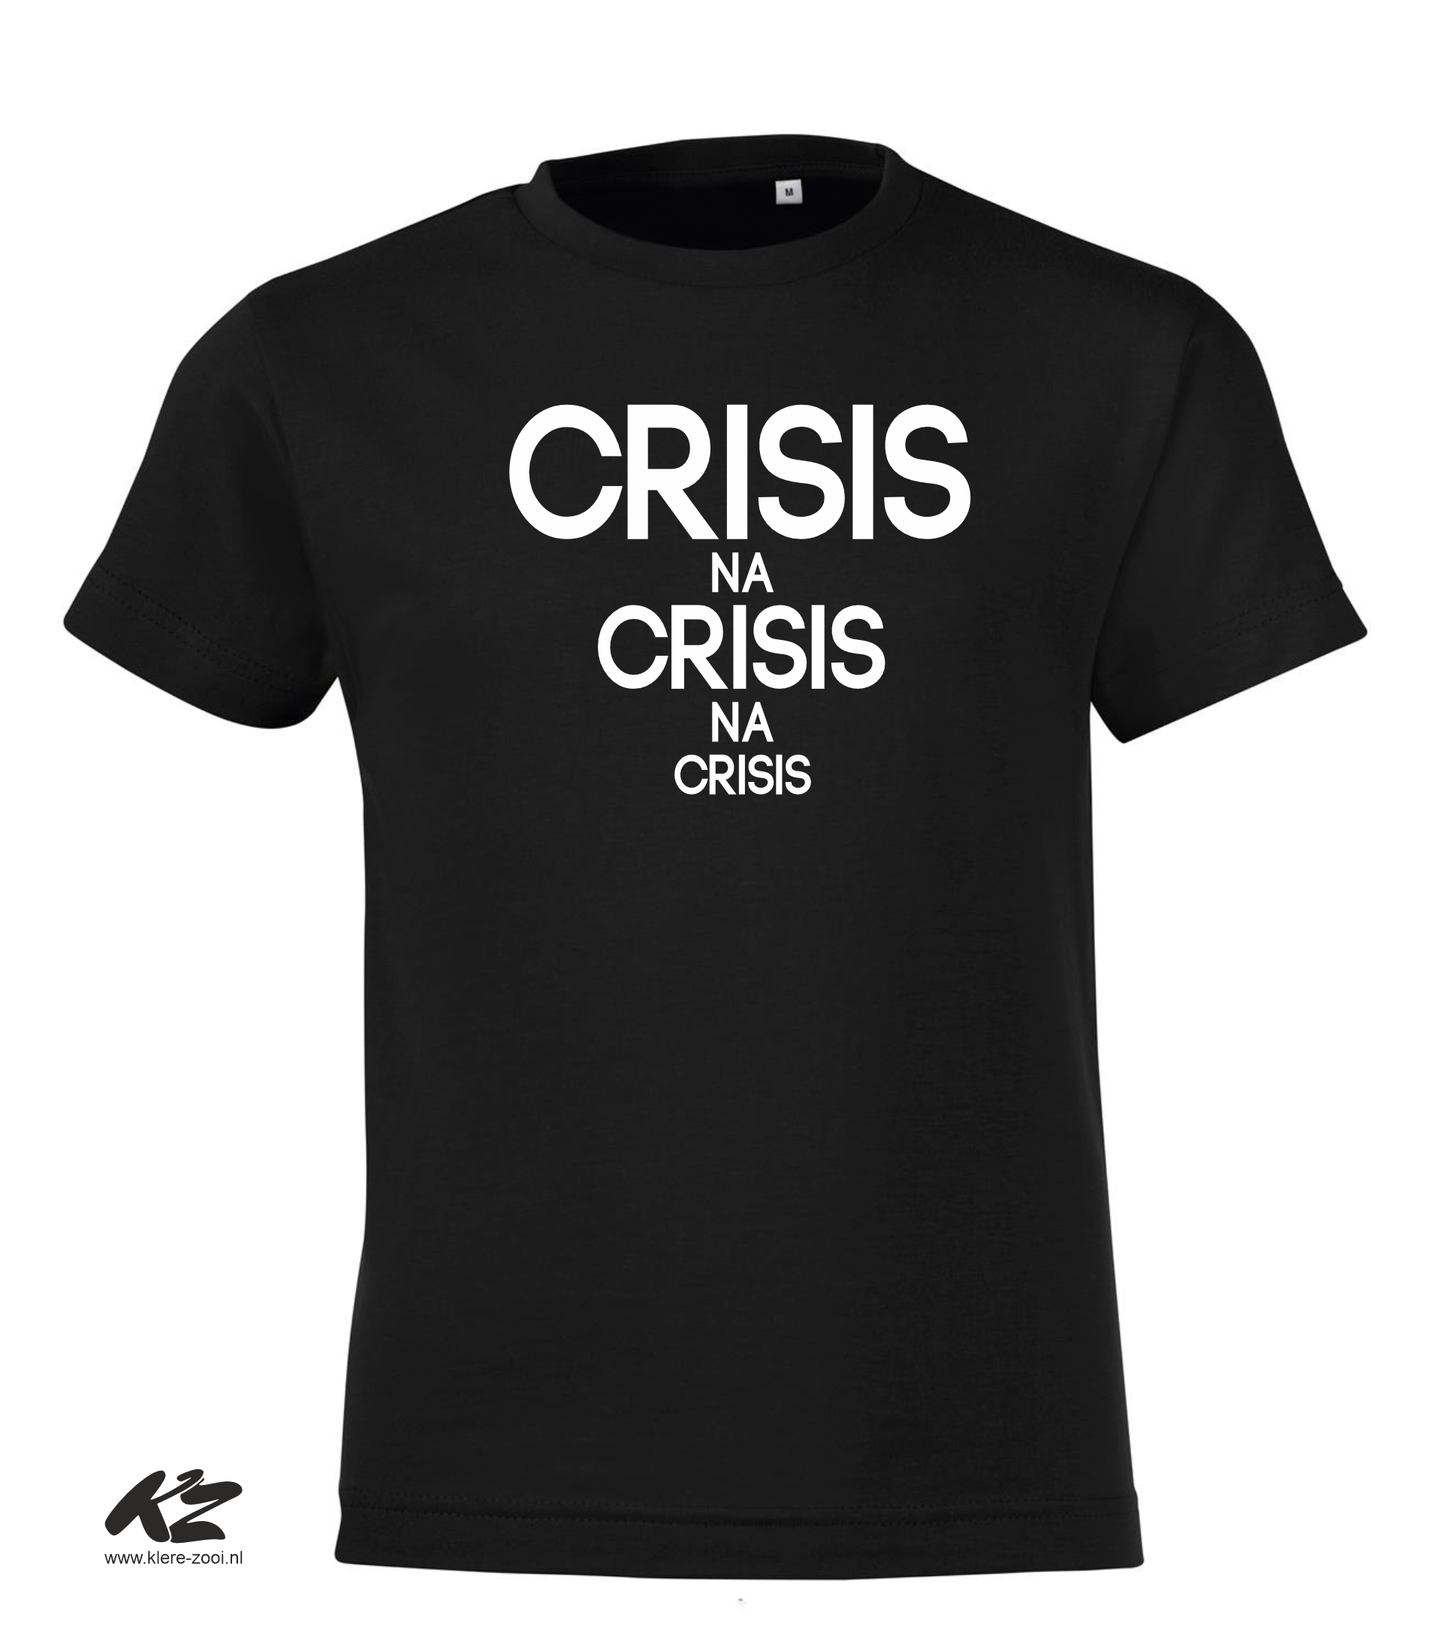 Crisis na Crisis na Crisis